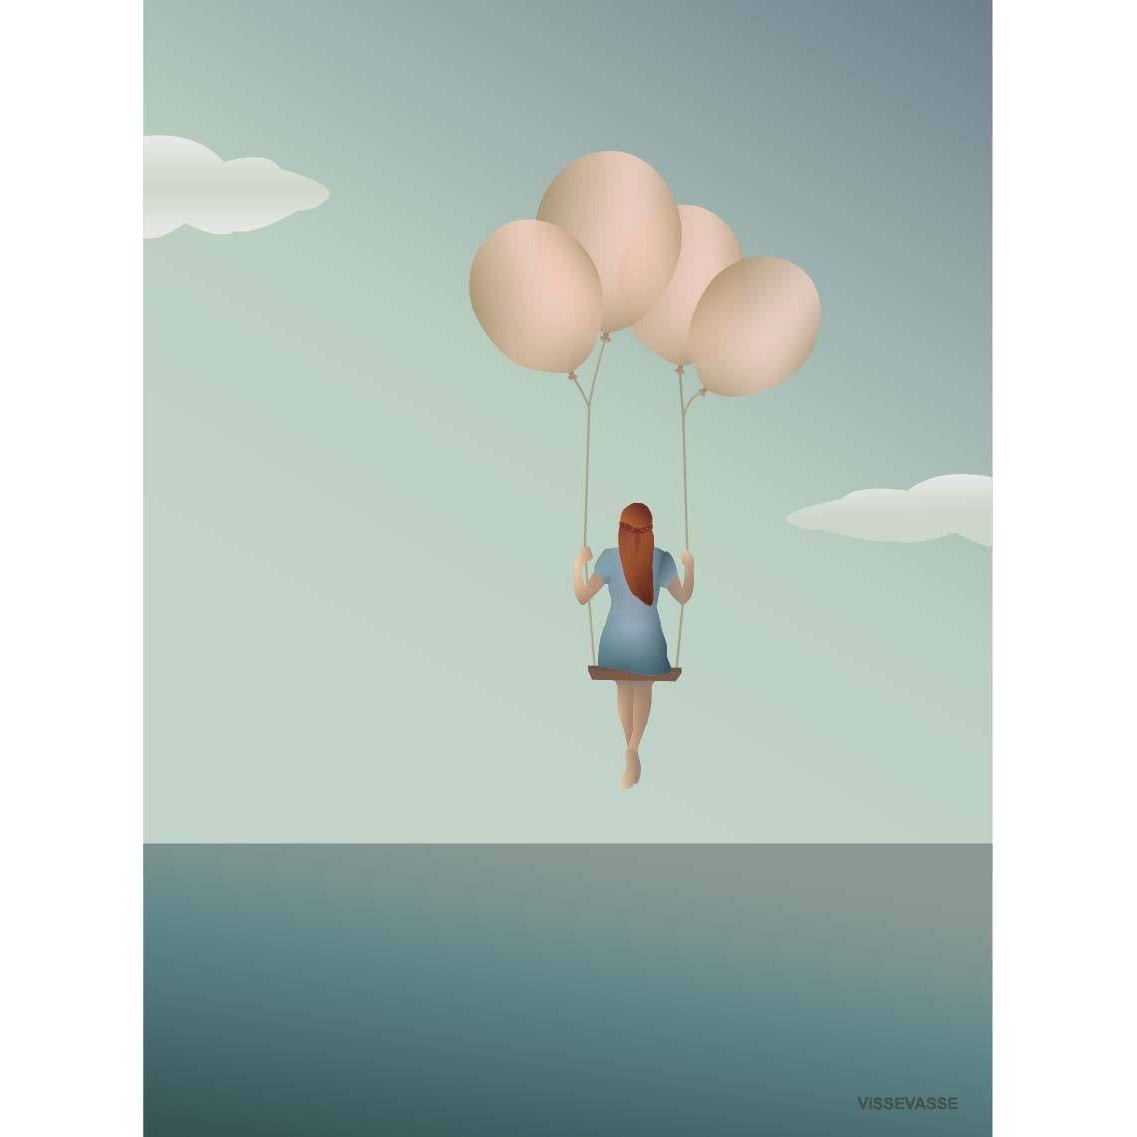 Vissevasse Balloon Dream Poster, 15X21 Cm-Wanddekoration-Vissevasse-5713138500315-F-2015-003-S-VIS-inwohn